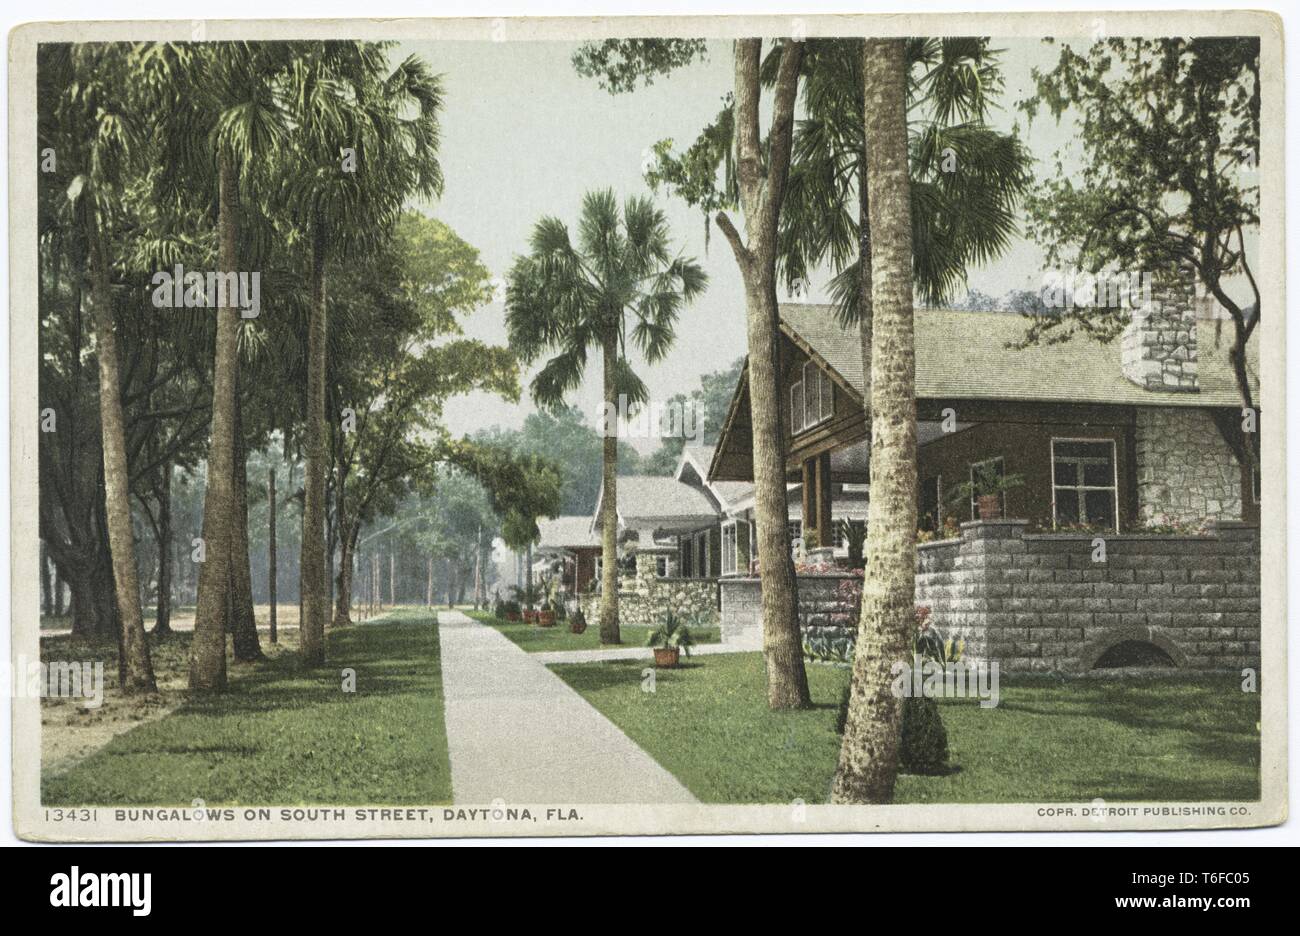 Detroit Publishing Company cartolina vintage la riproduzione dei bungalows su South Street a Daytona, Florida, 1914. Dalla Biblioteca Pubblica di New York. () Foto Stock